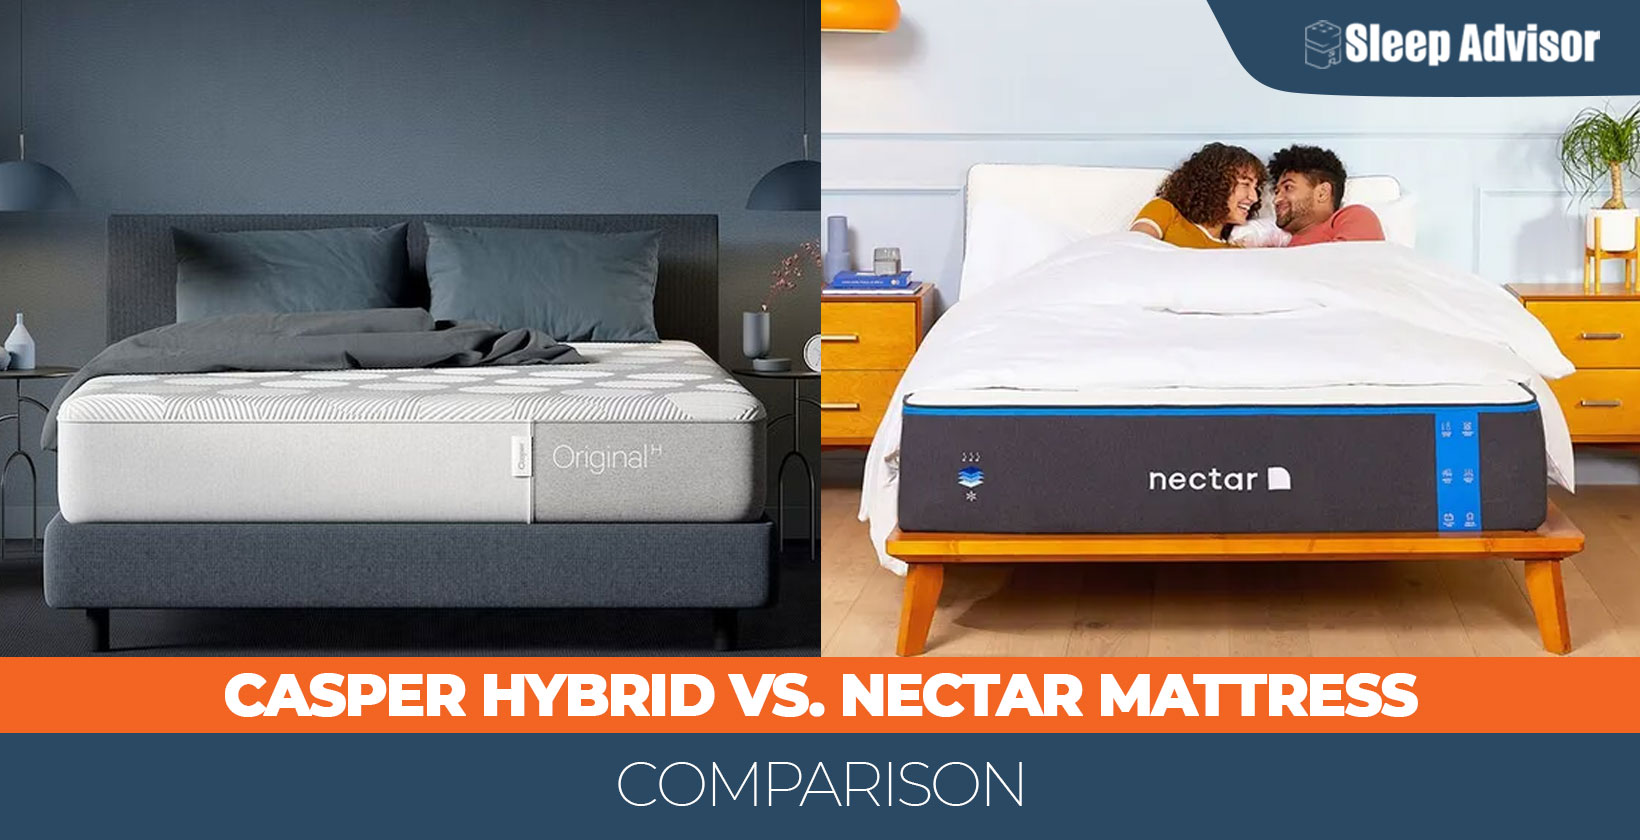 Casper Hybrid vs. Nectar mattress comparison